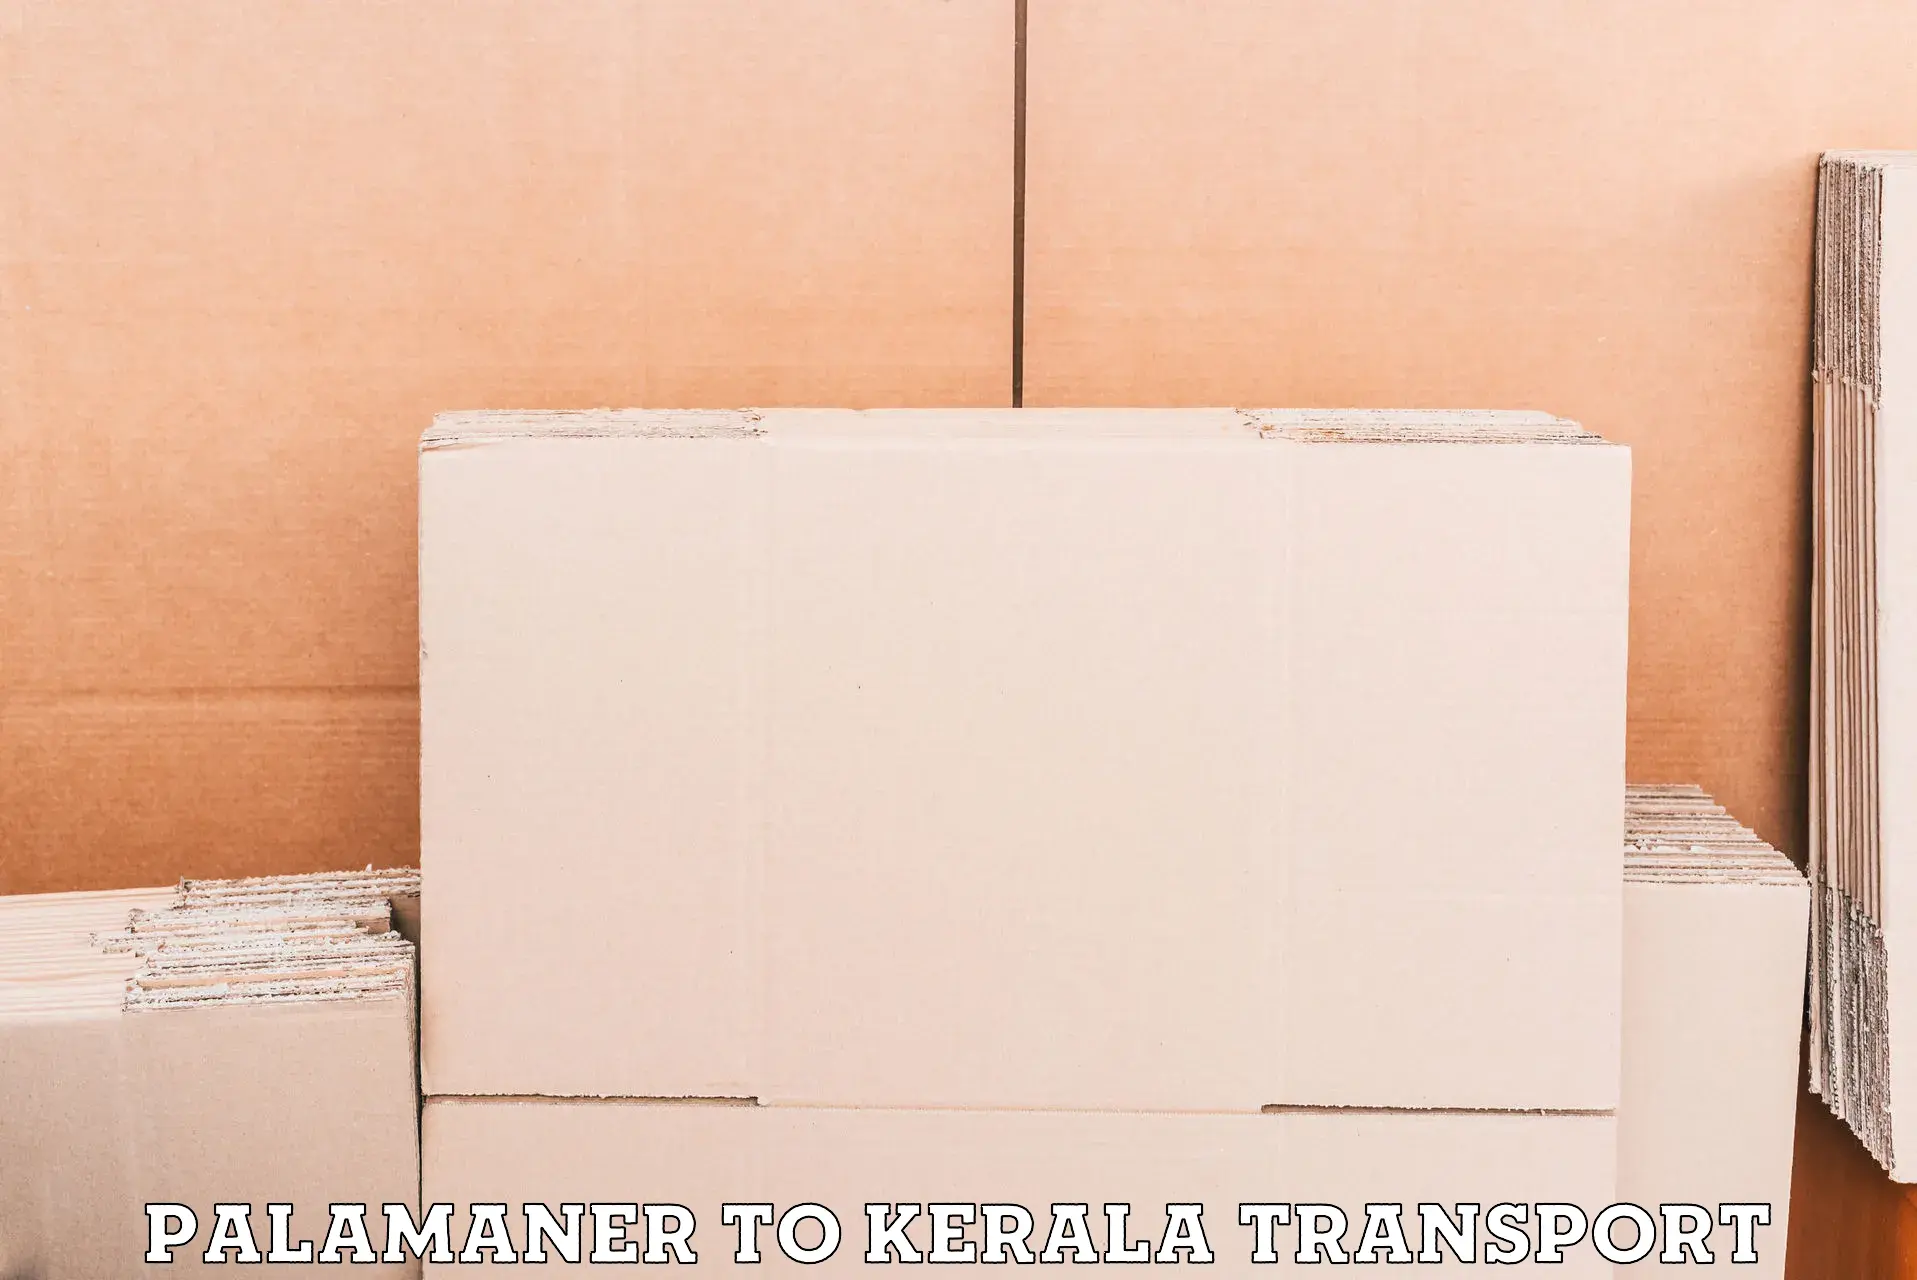 Daily parcel service transport in Palamaner to Kerala University Thiruvananthapuram